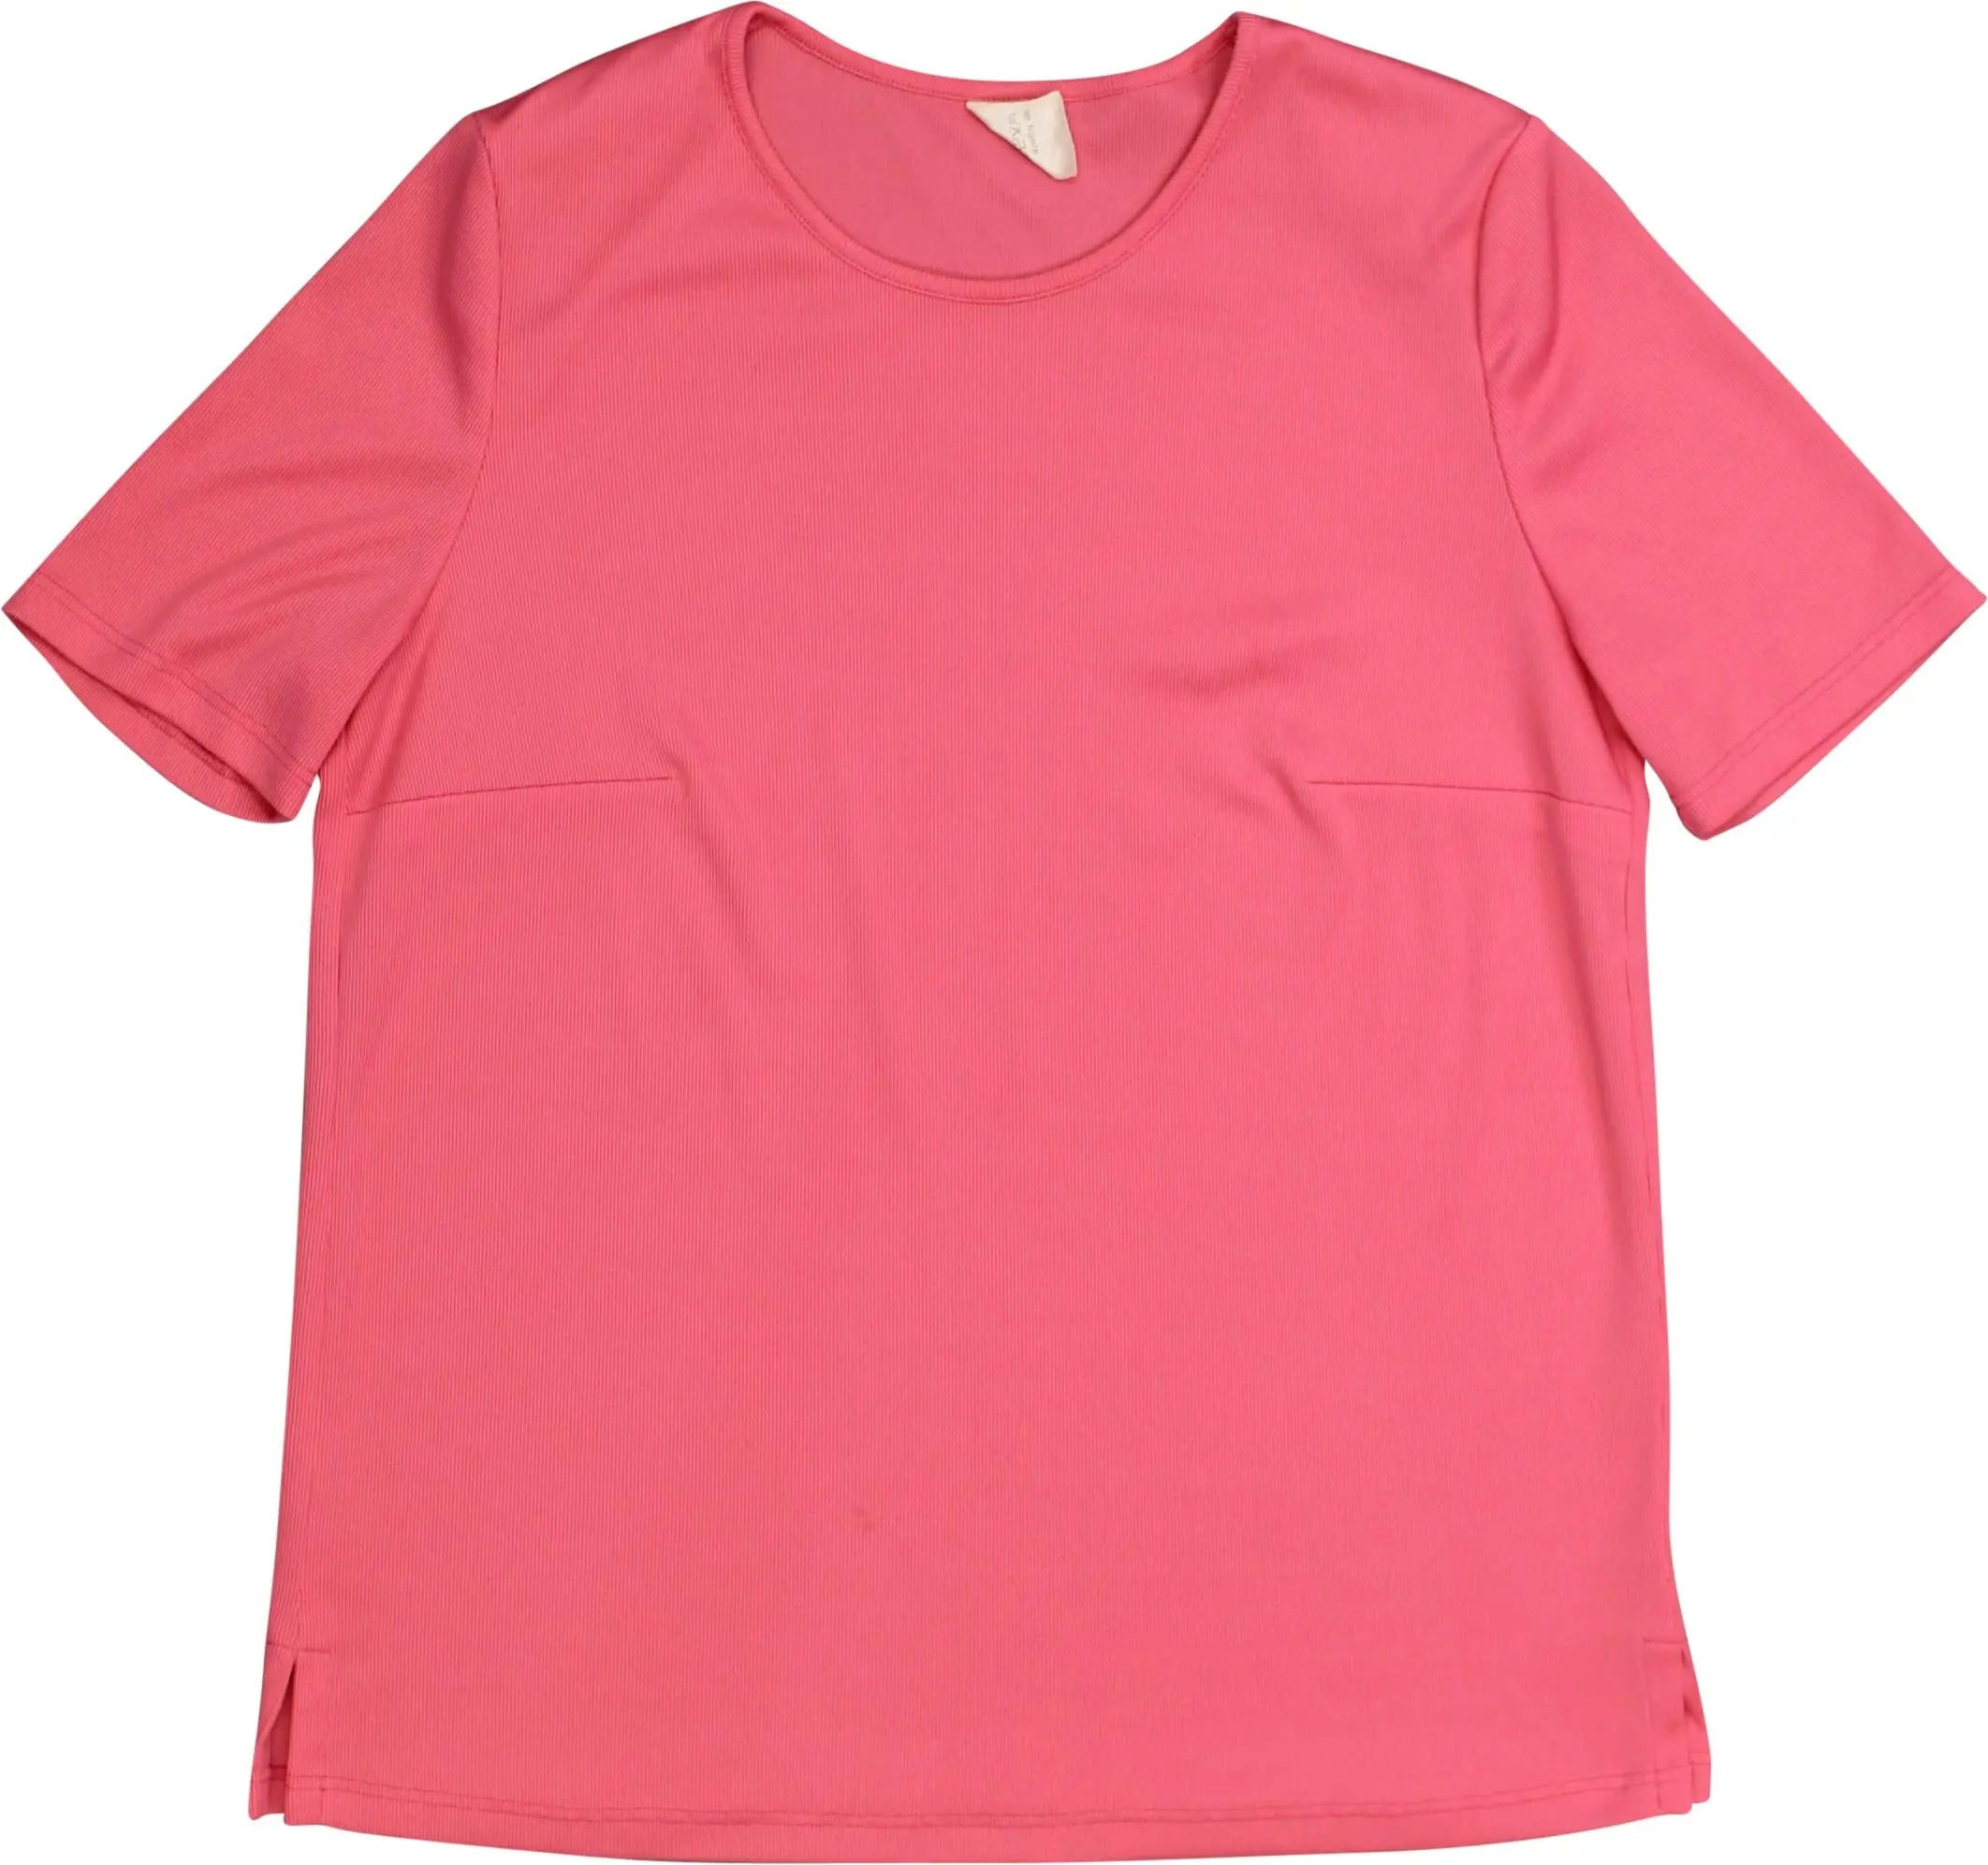 Frankenwälder - Pink T-shirt with Shoulder Pads- ThriftTale.com - Vintage and second handclothing